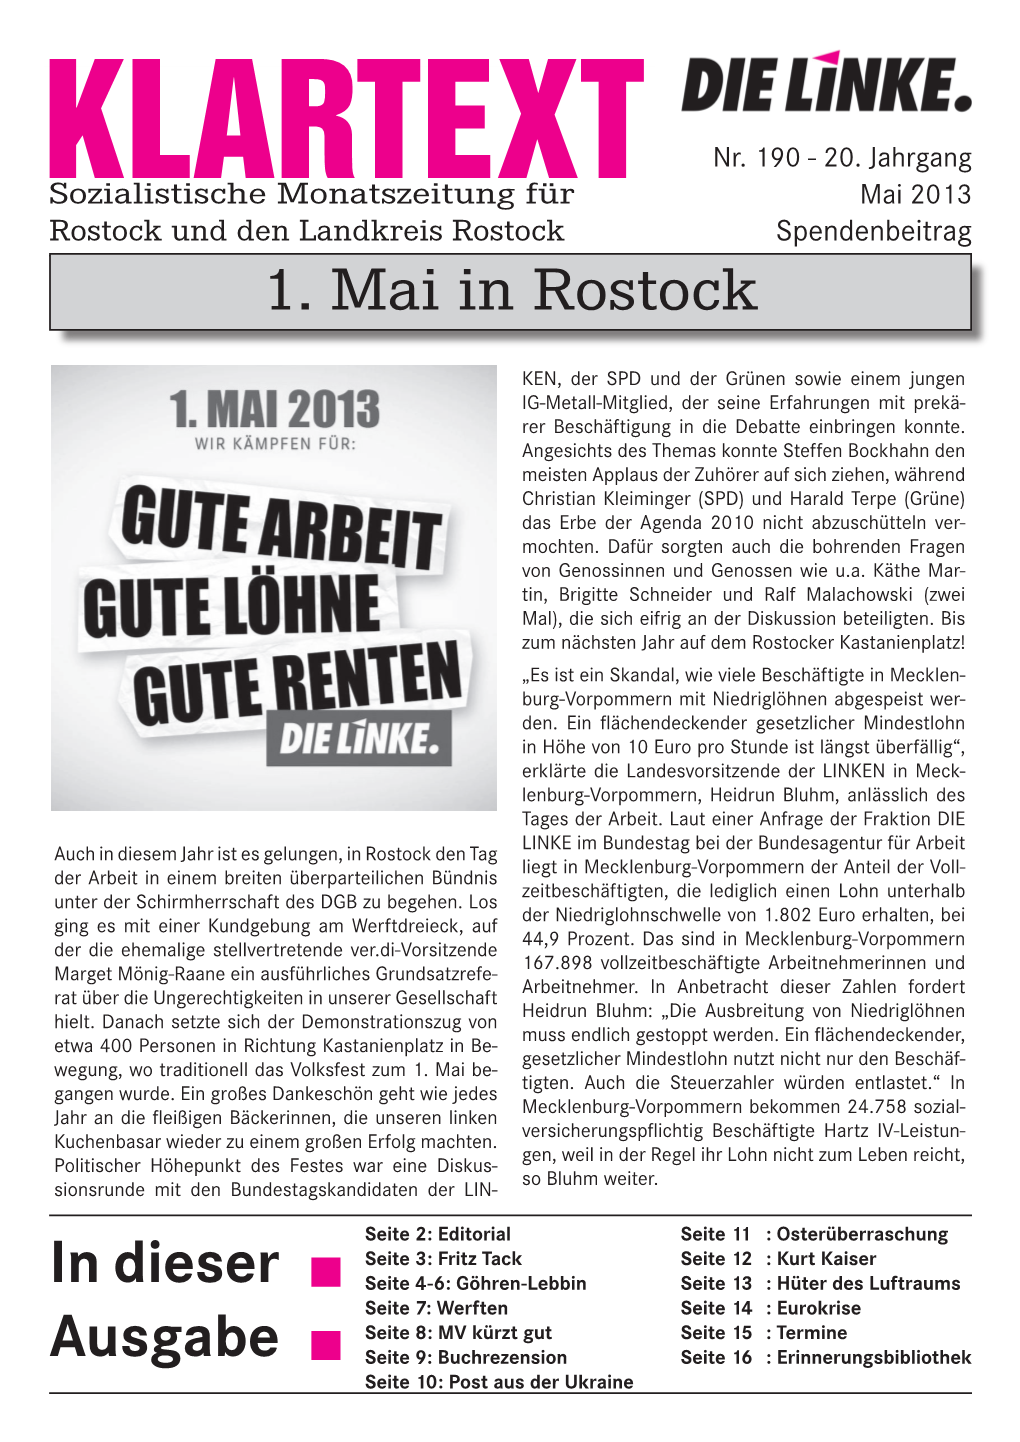 In Dieser Ausgabe 1. Mai in Rostock